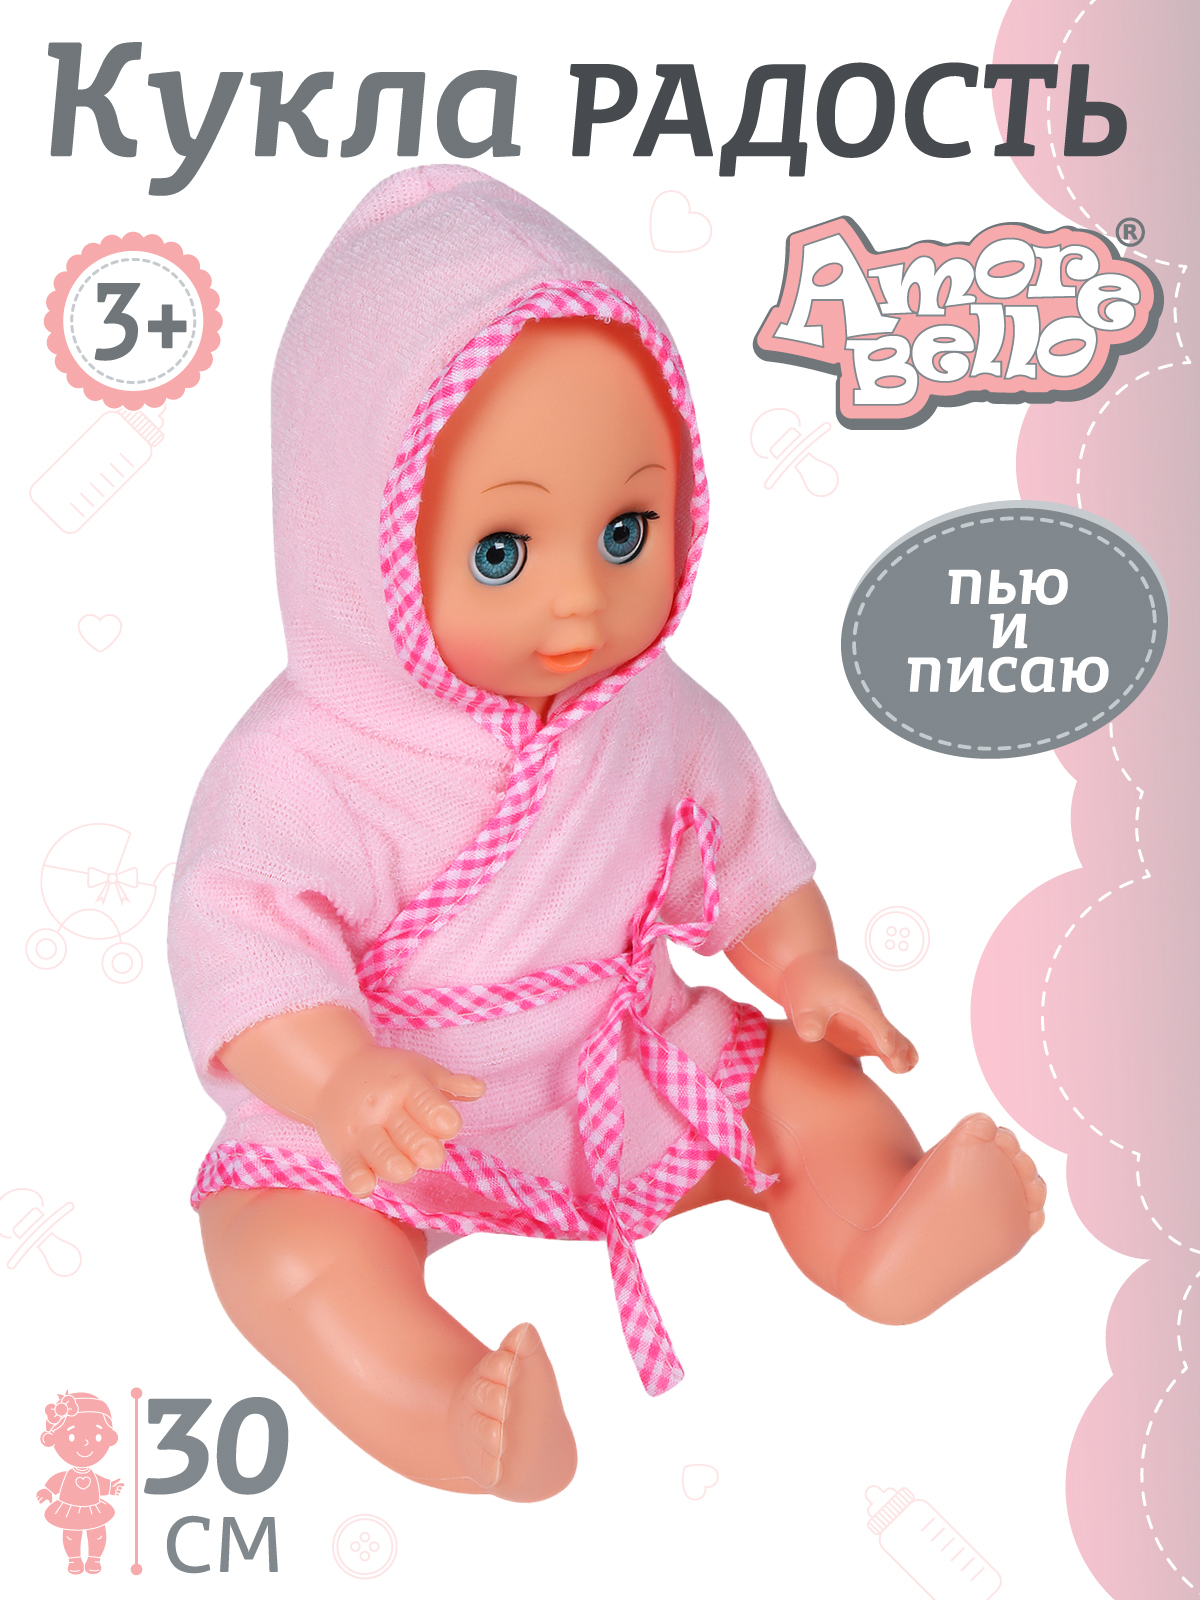 Кукла Amore Bello серия Радость 30 см пьет и писает пупс, JB0208945